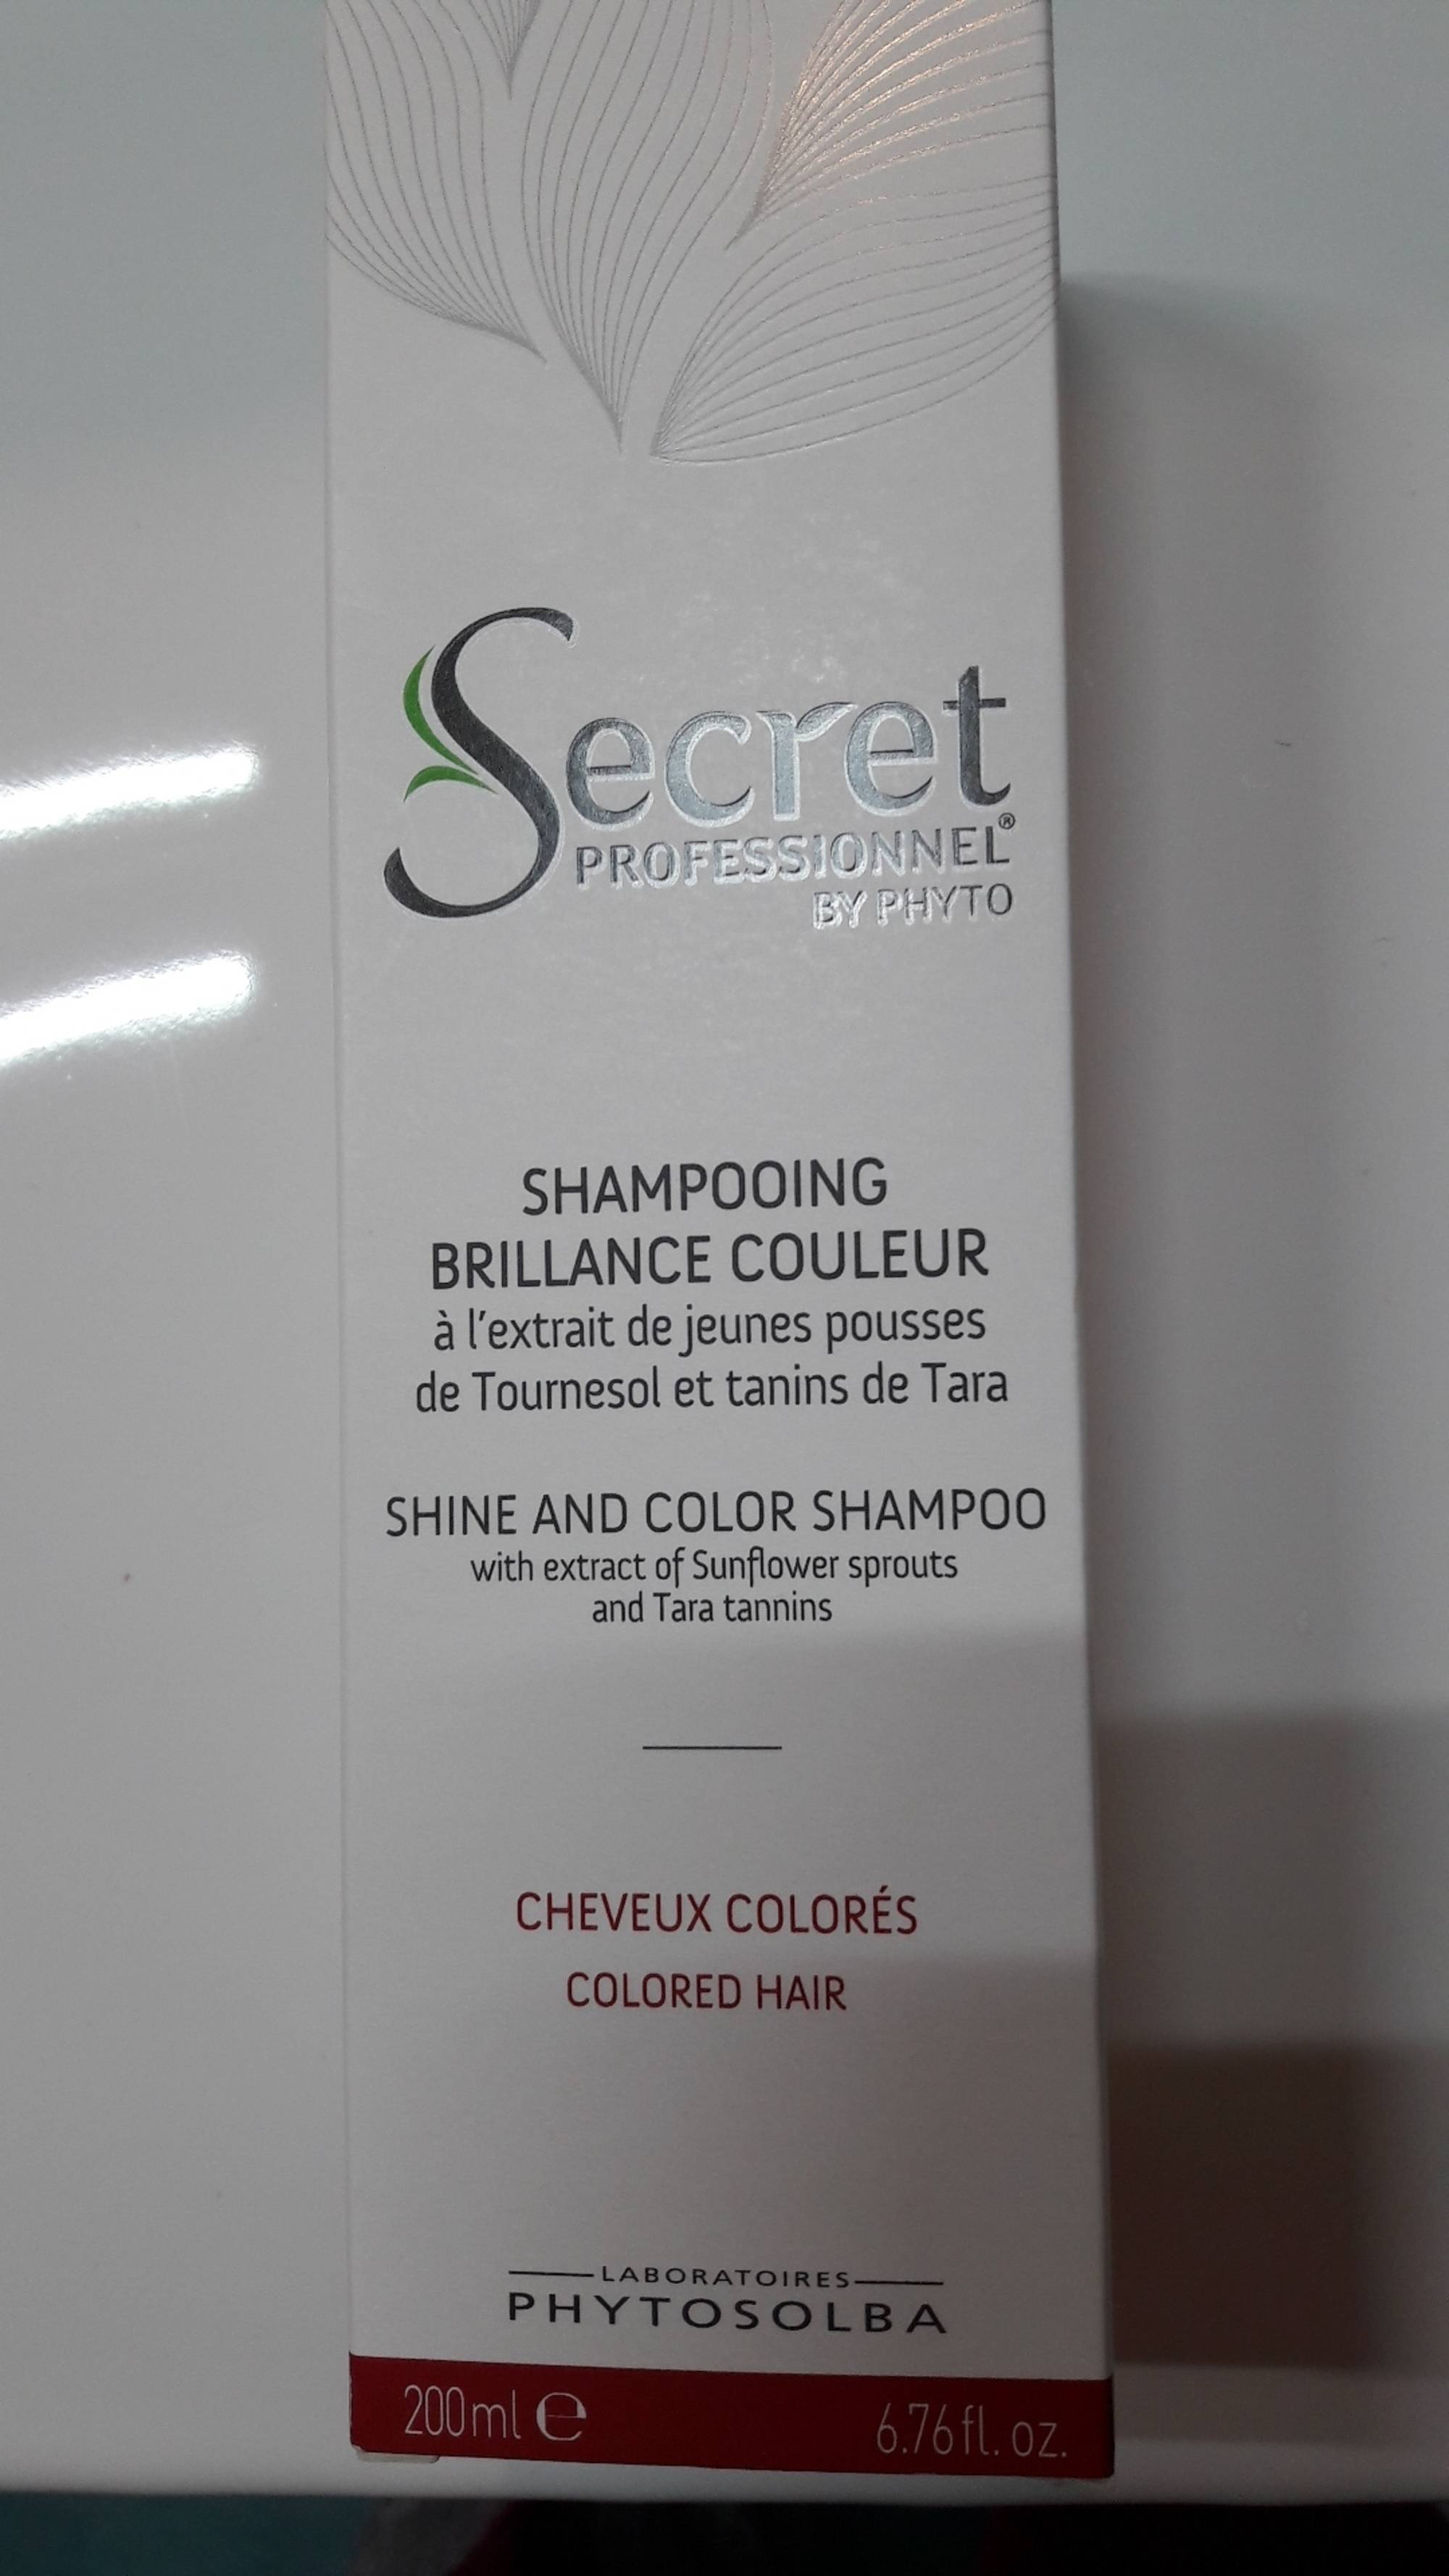 SECRET PROFESSIONNEL BY PHYTO - Cheveux colorés - Shampooing brillance couleur